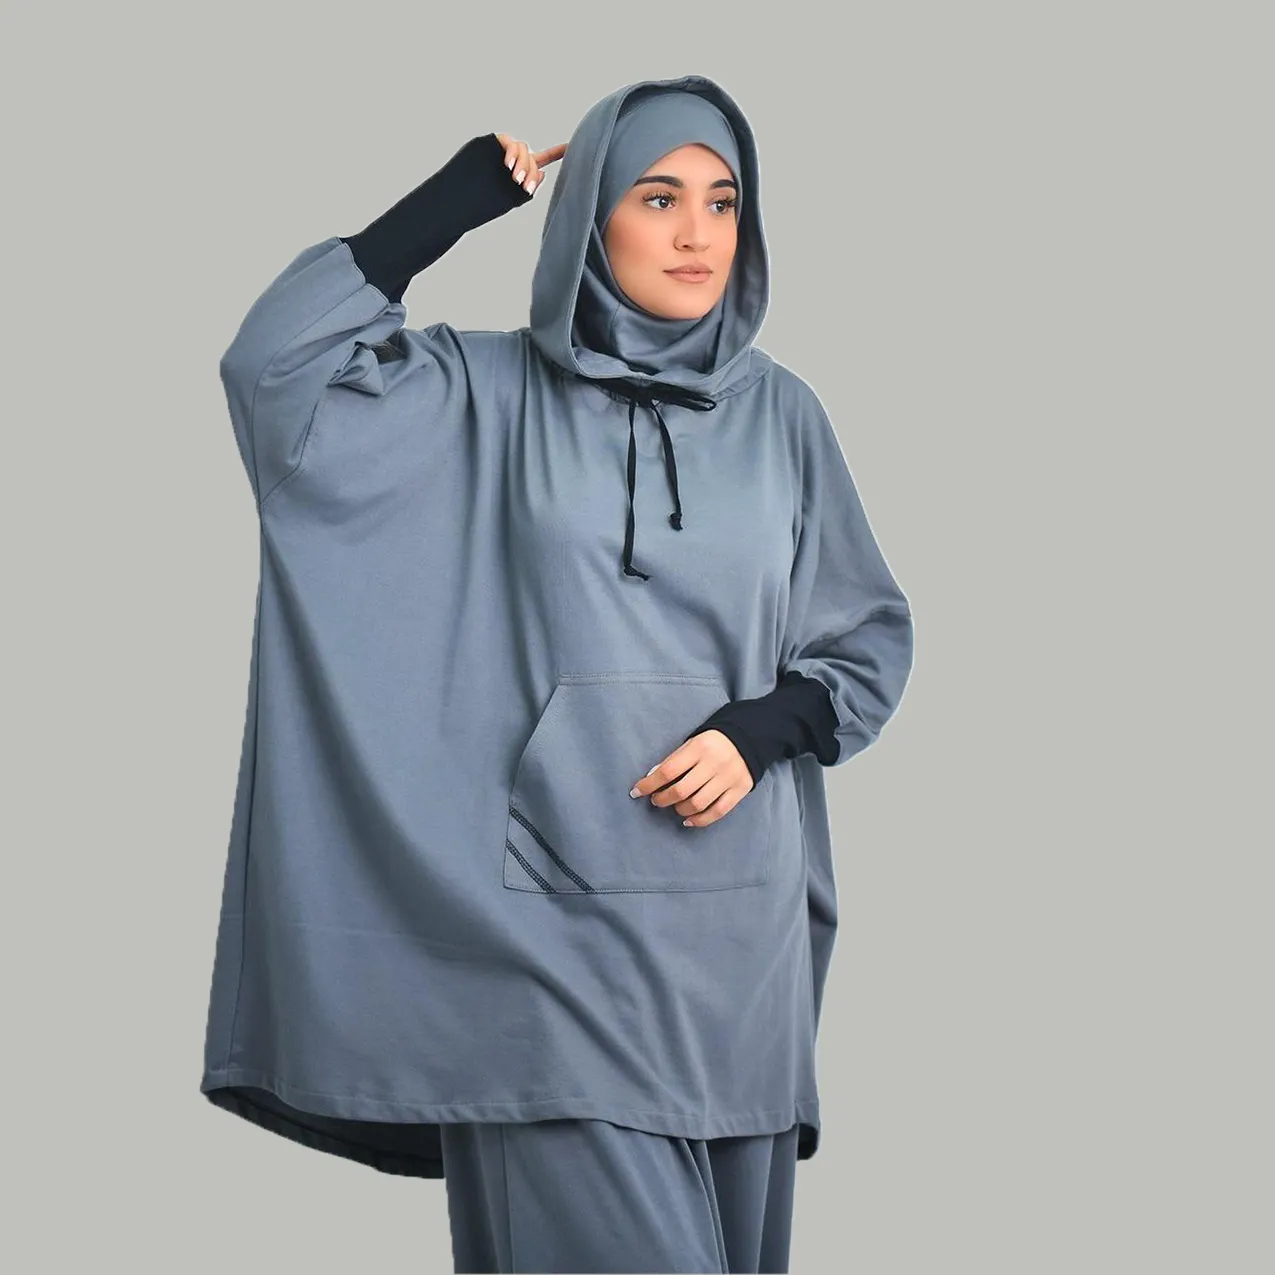 Lanna muslimah-traje deportivo con capucha de cuello redondo, conjunto de ropa deportiva para gimnasio musulmán, bata grande elástica suave